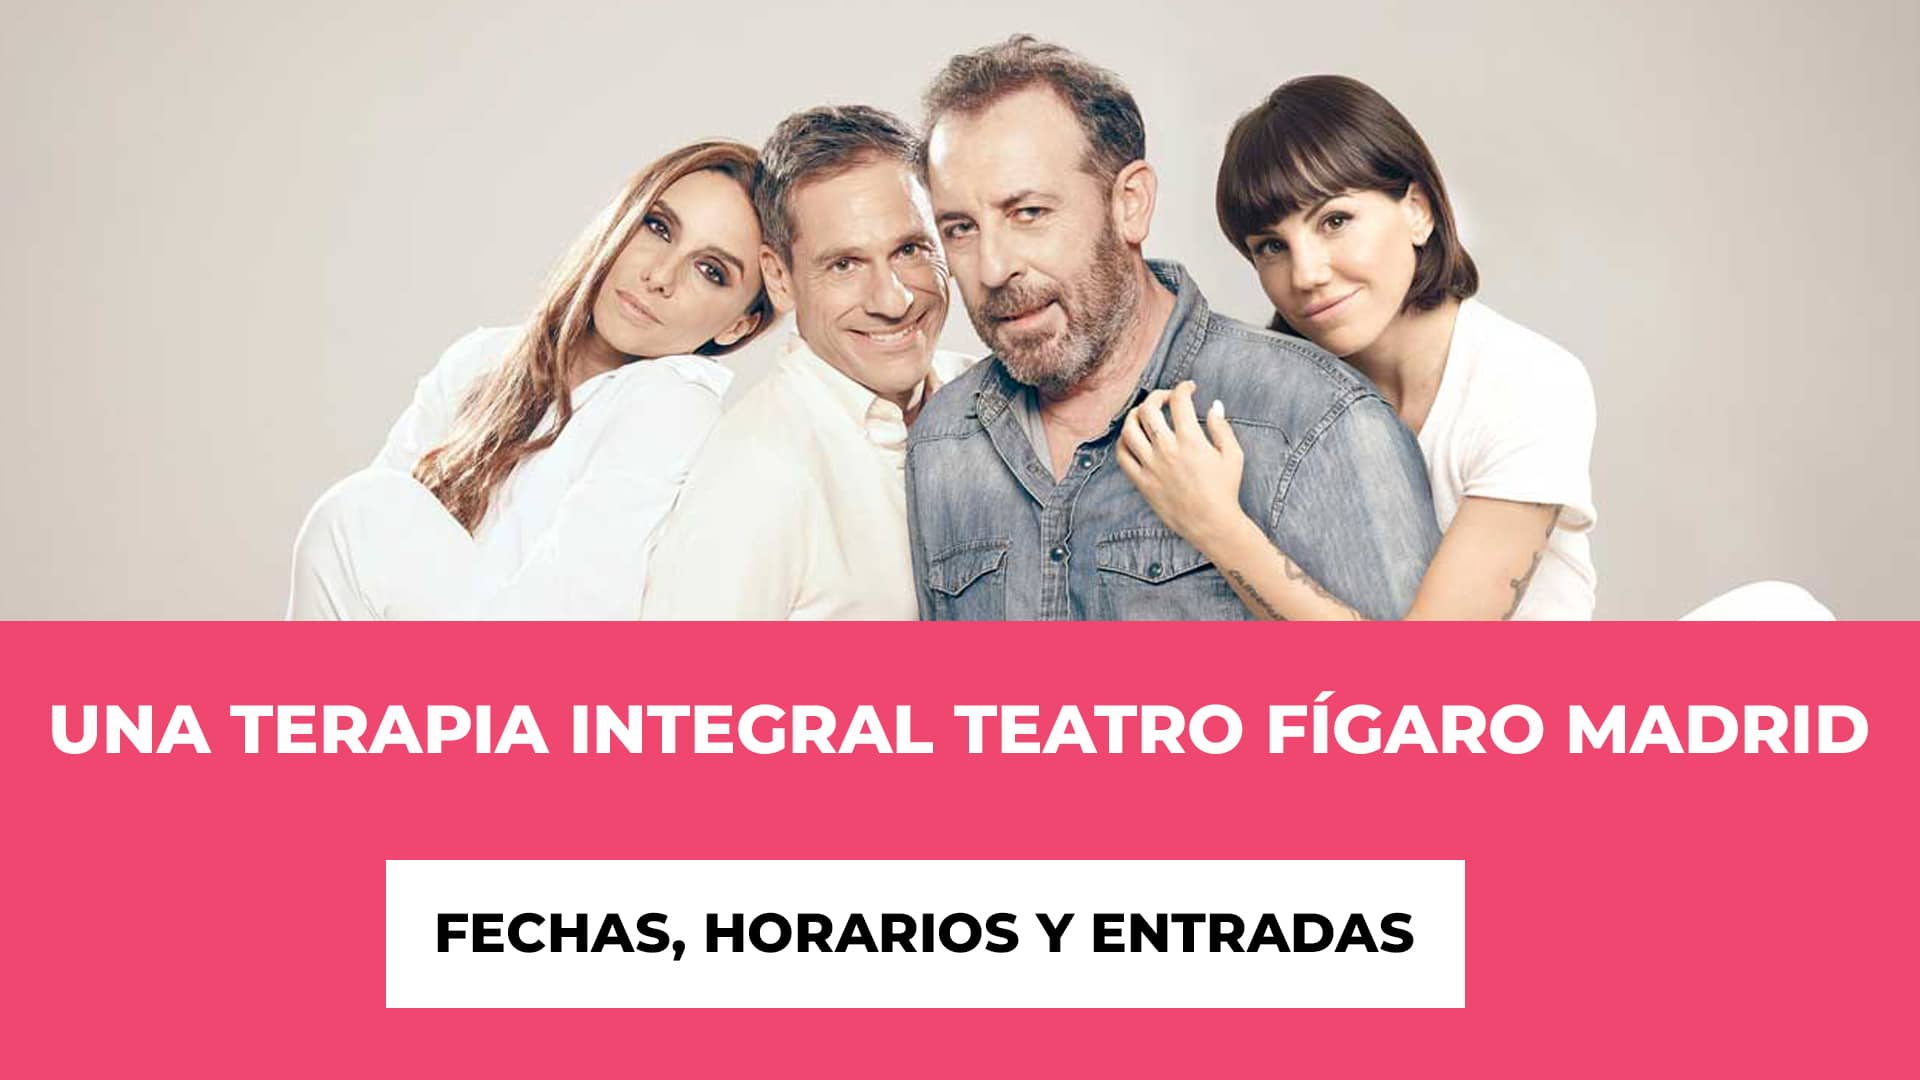 Una Terapia Integral Teatro Fígaro Madrid Entradas - Elenco - Fecha - Recinto - Precios Entradas, Horarios Funciones